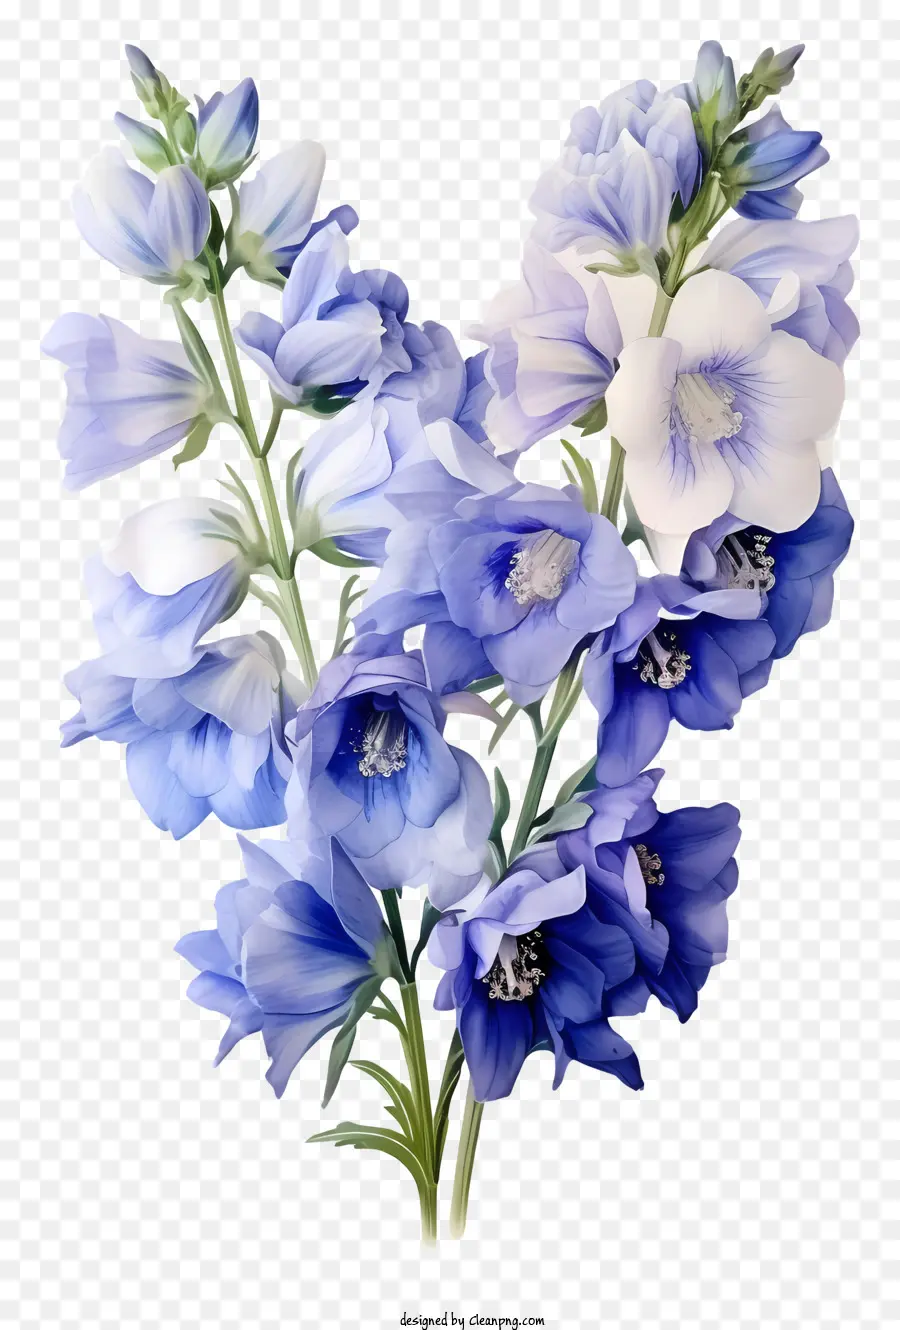 Blaue Blume - Nahaufnahme der blauen Blume mit weißen Blütenblättern